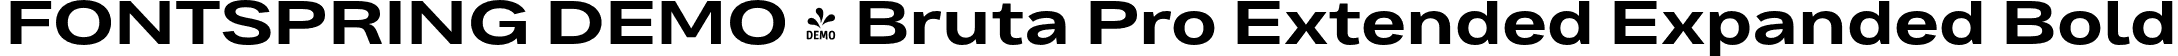 FONTSPRING DEMO - Bruta Pro Extended Expanded Bold font | Fontspring-DEMO-brutaproextended-bold.otf